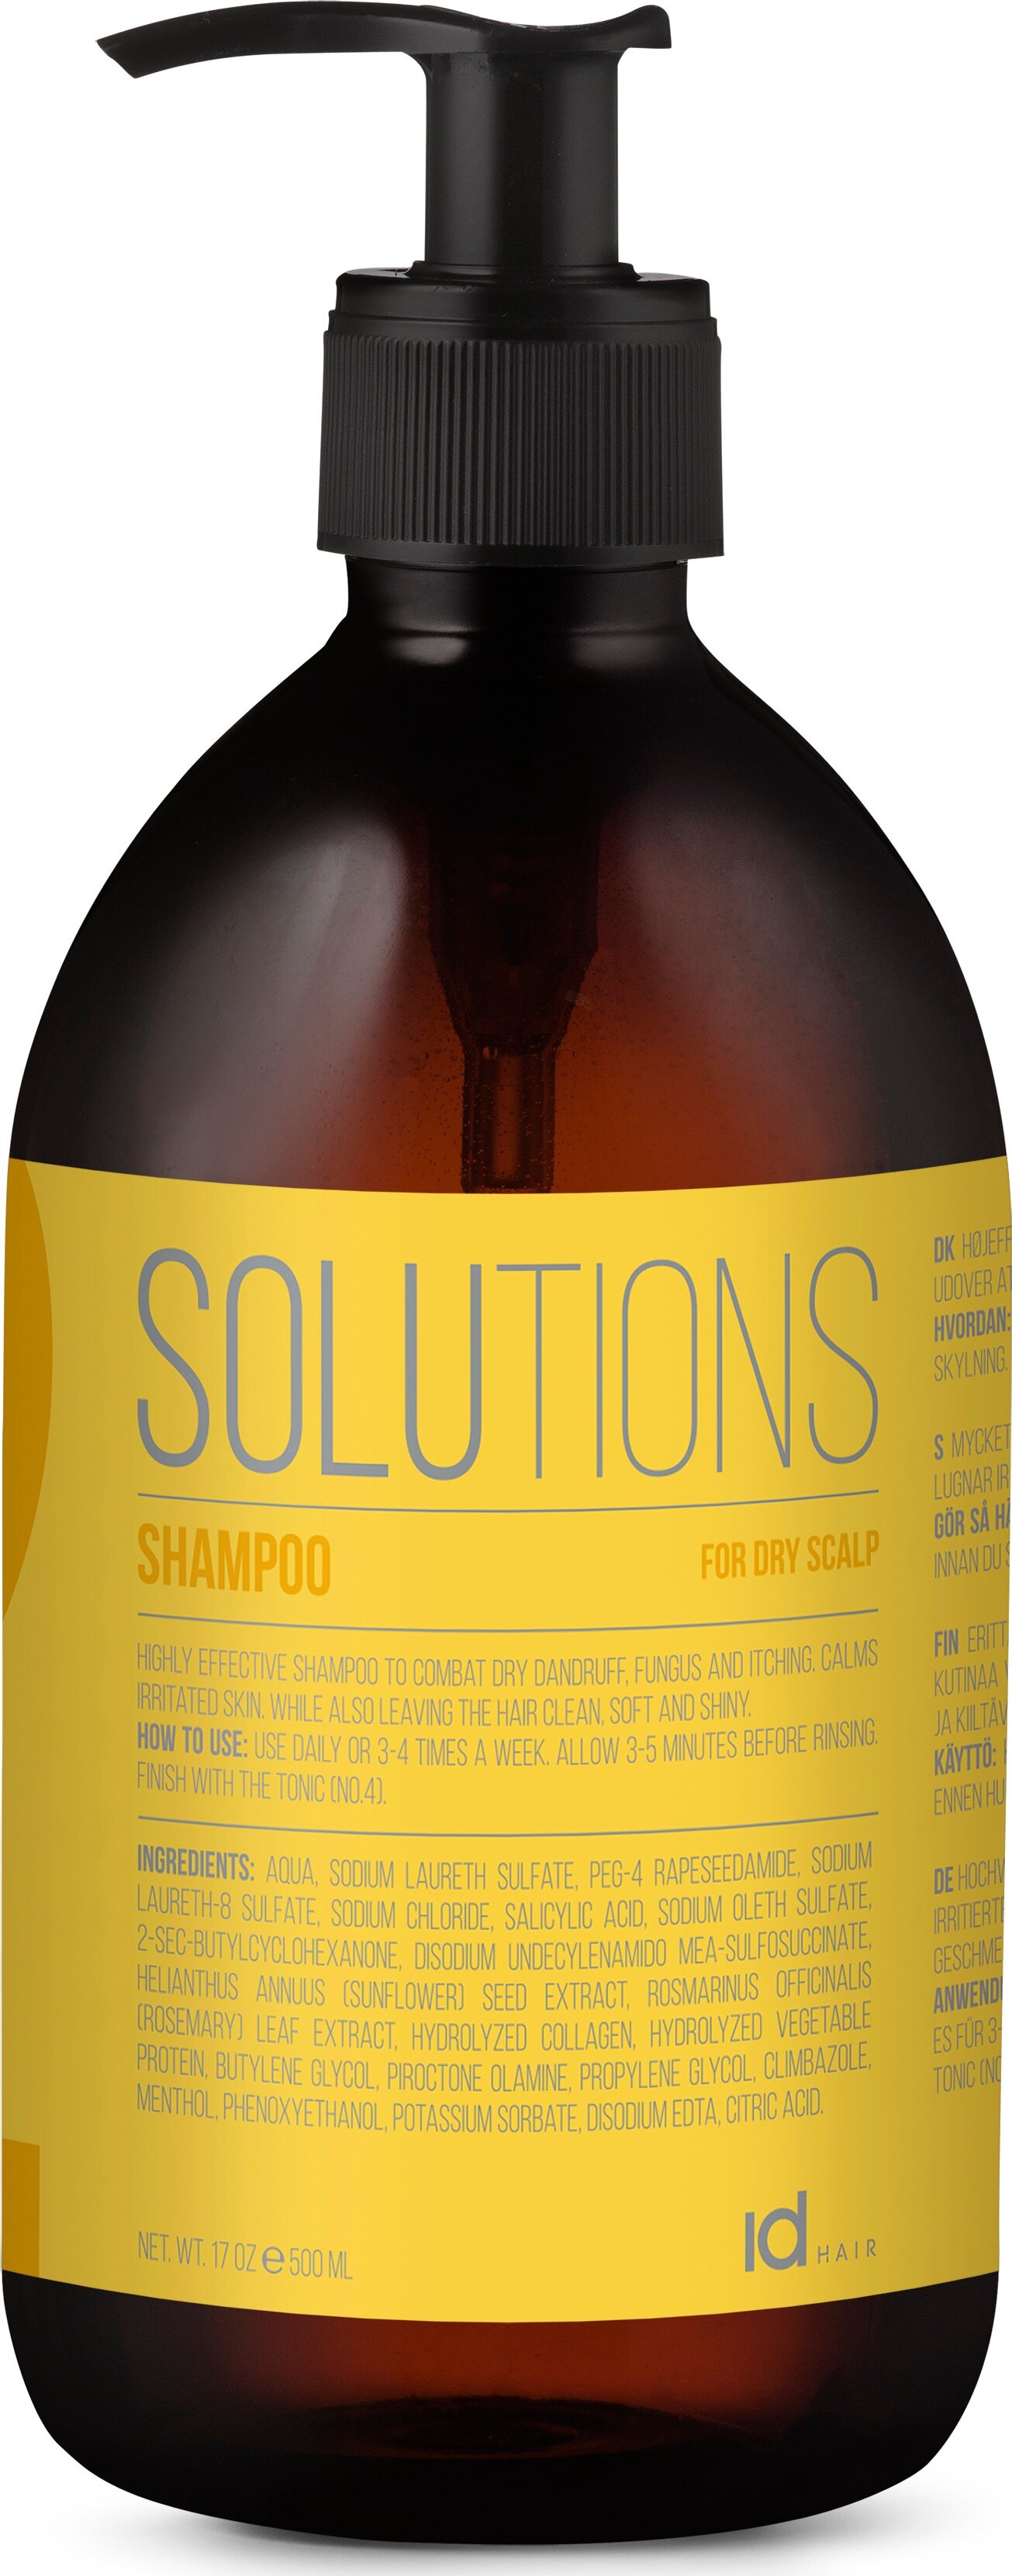 Billede af Id Hair - Solutions Shampoo 2 - 500 Ml hos Gucca.dk